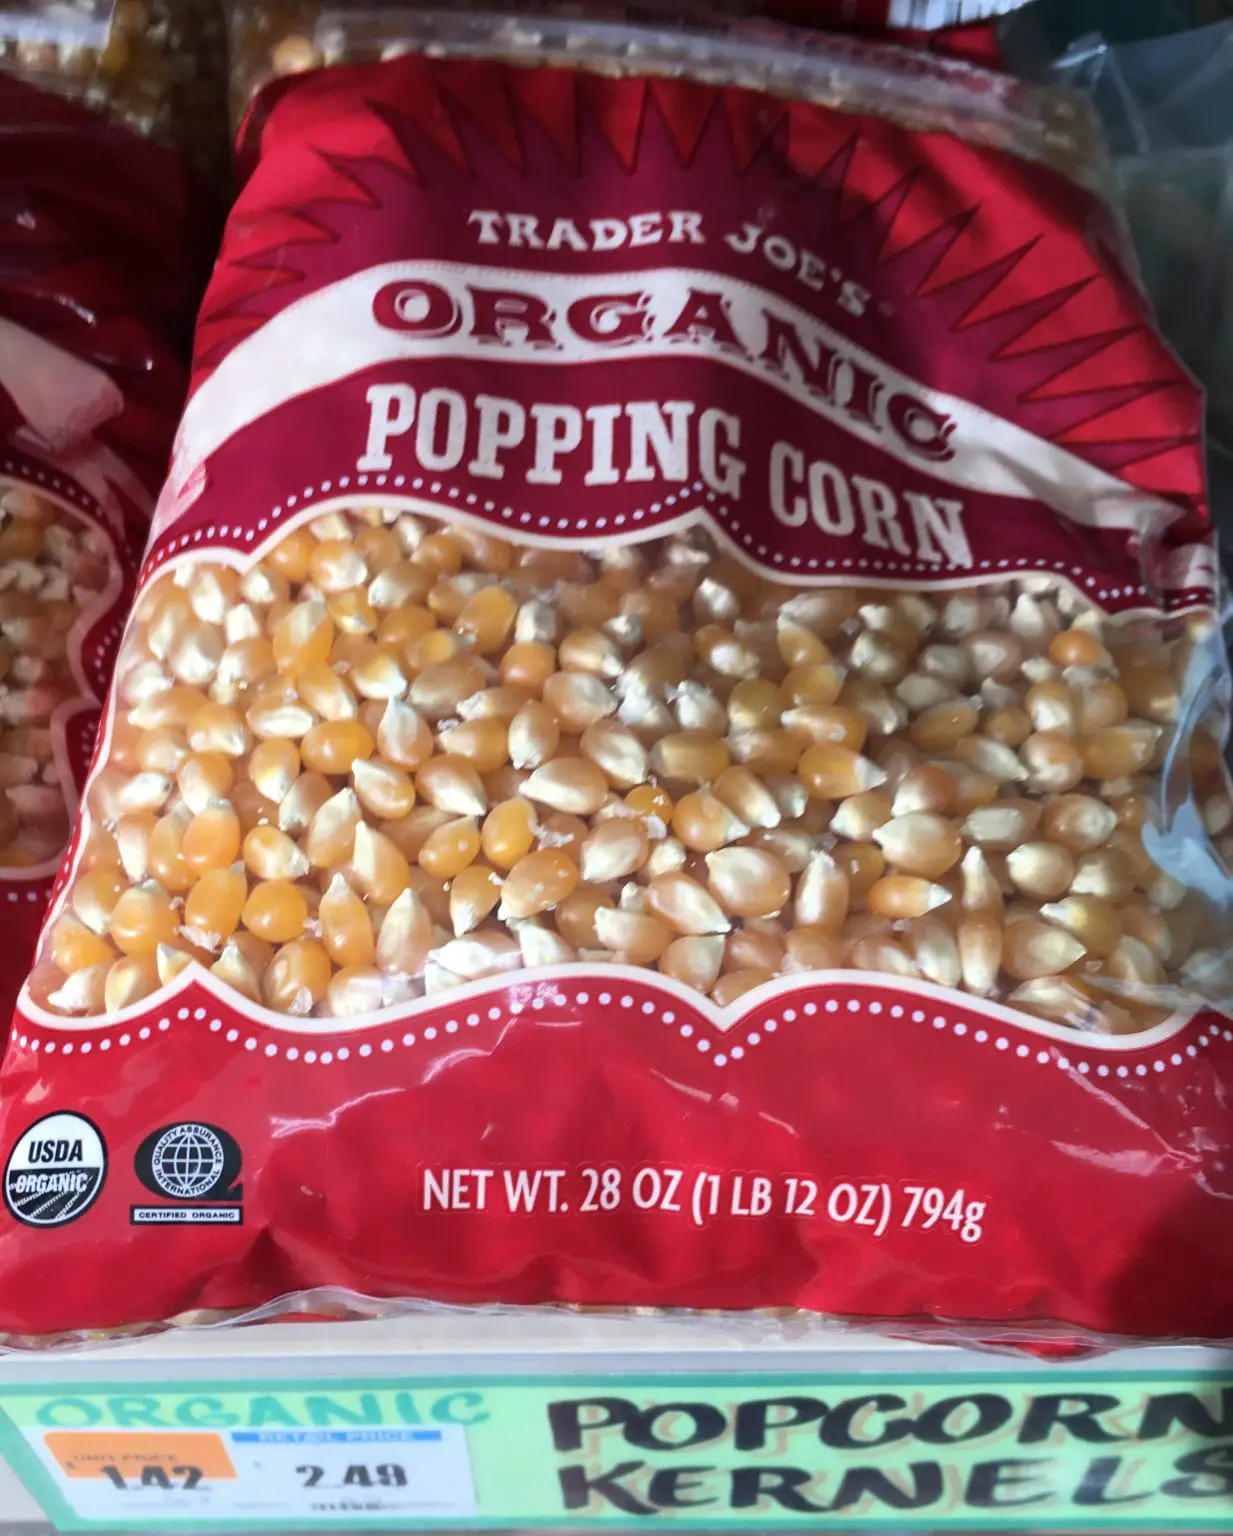 Trader Joe's Popcorn, Organic Whole Grain - Trader Joe's Reviews